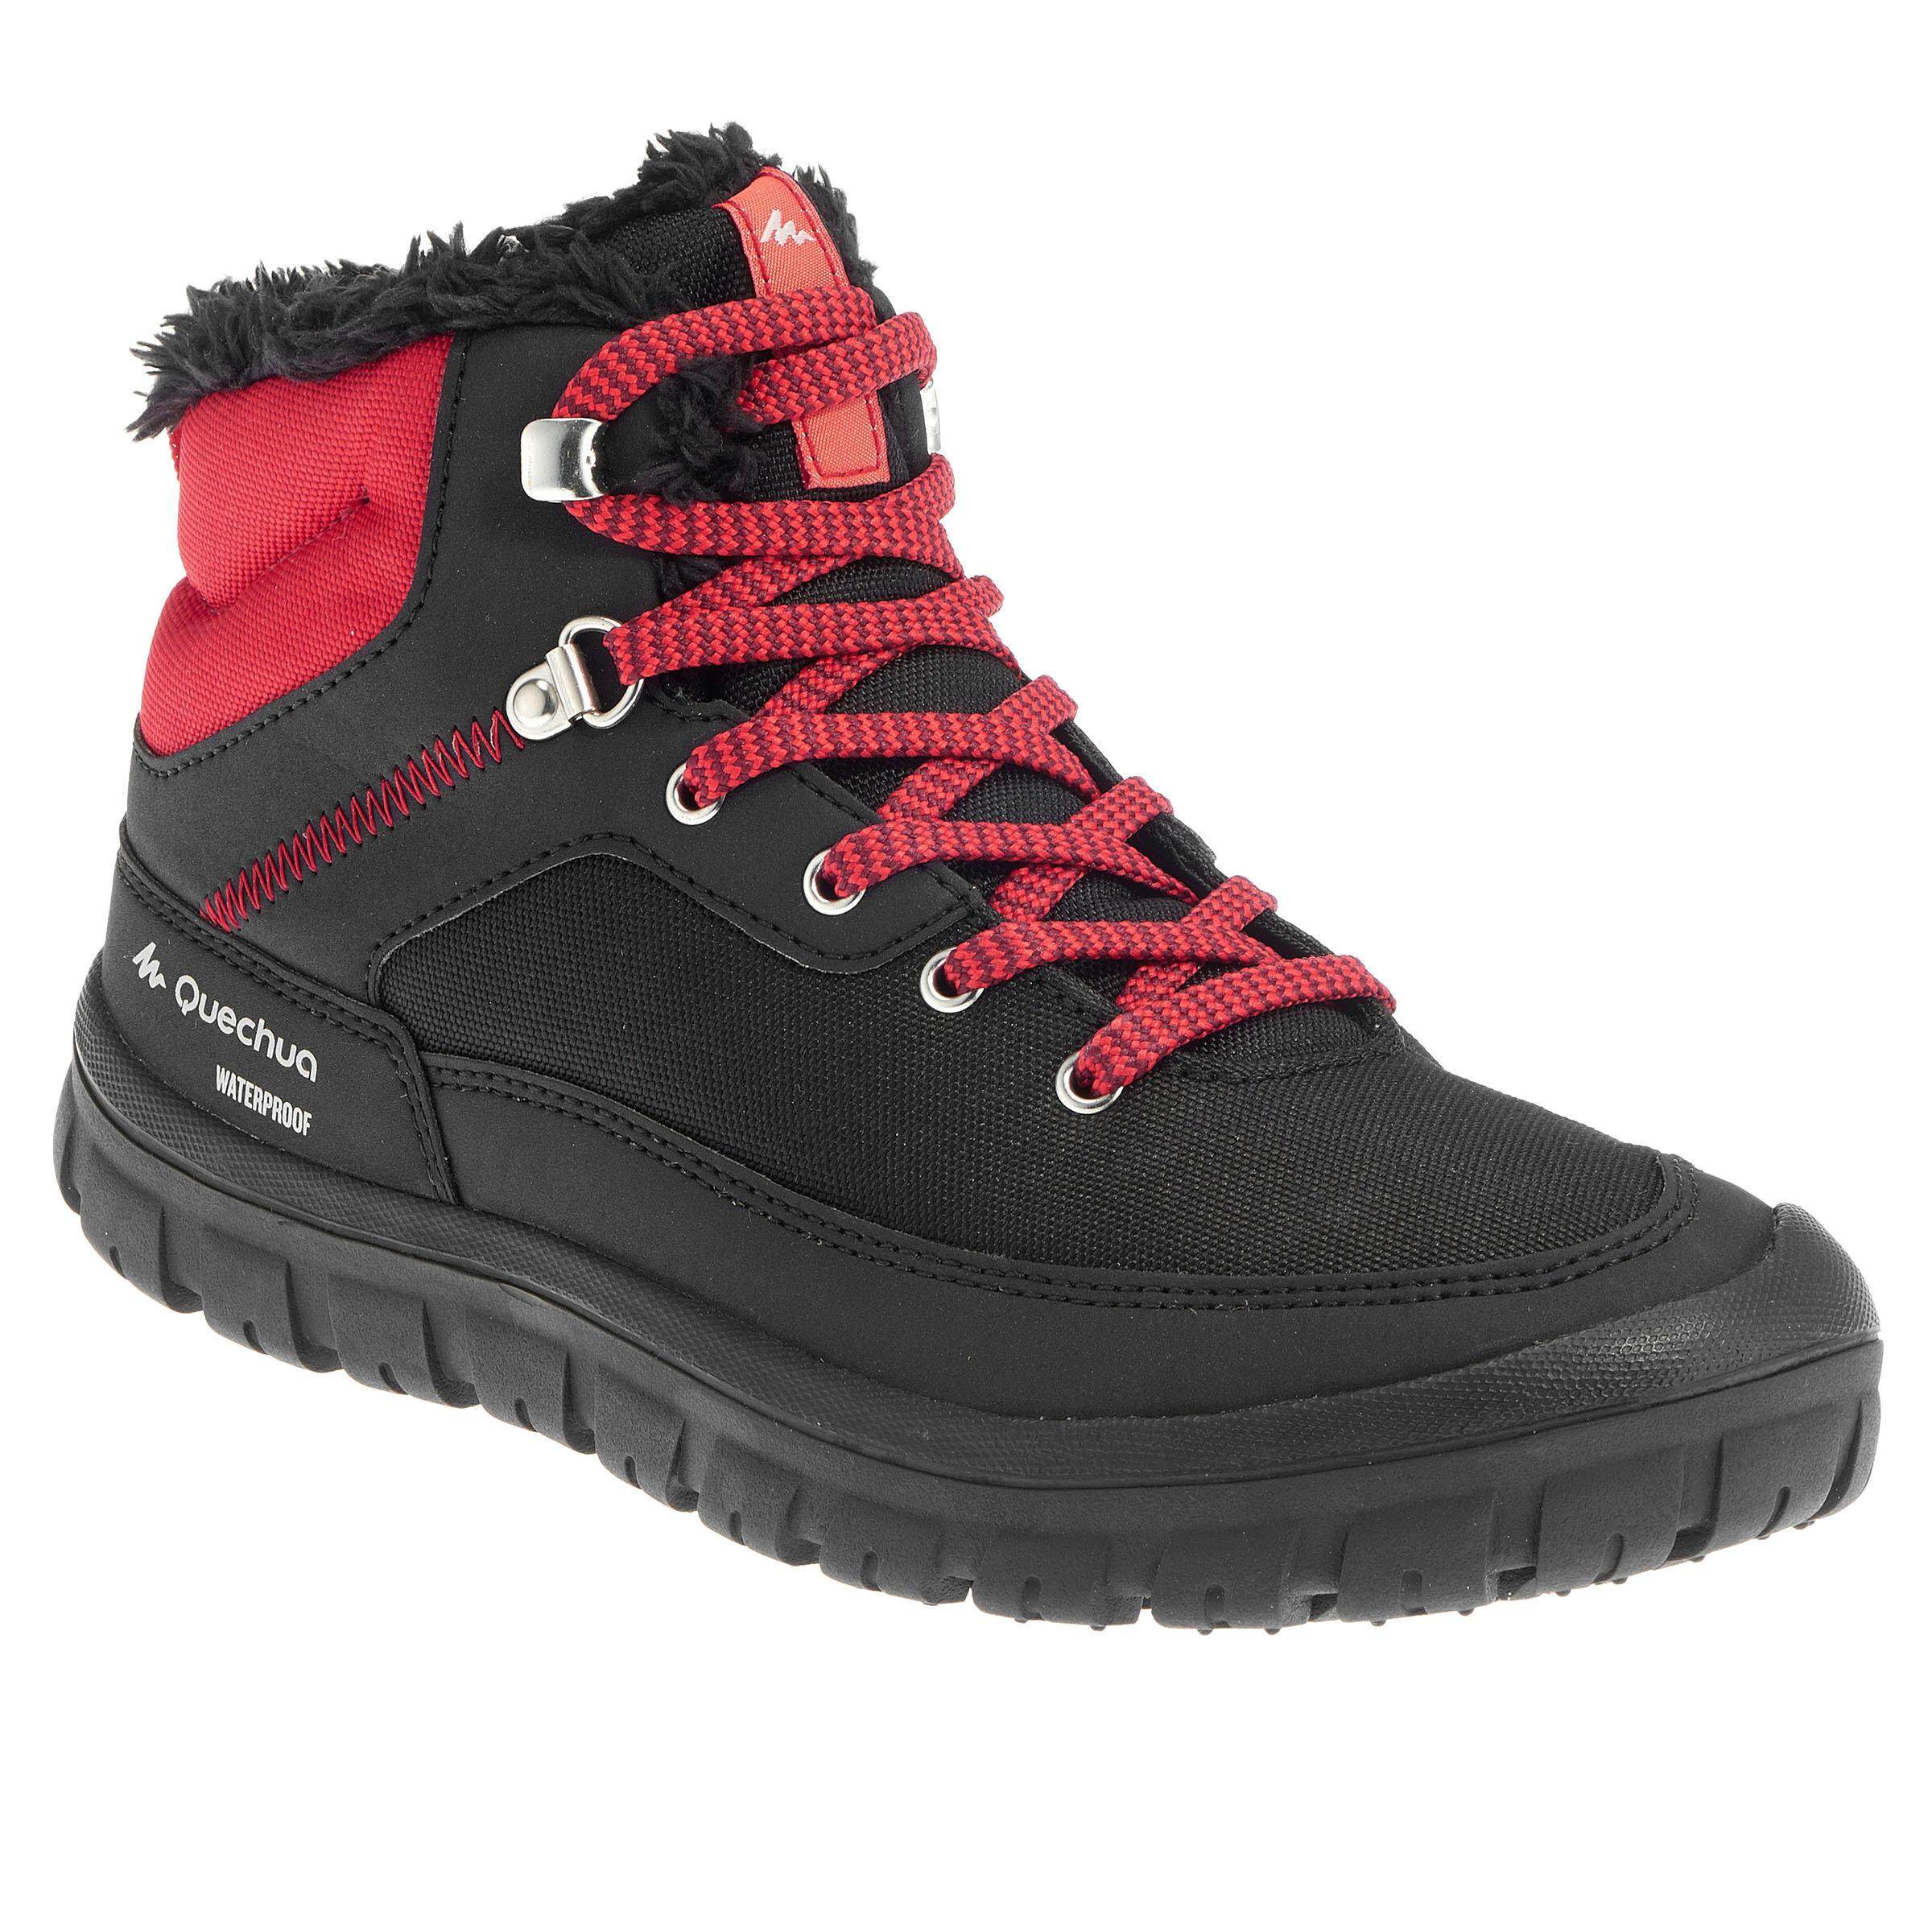 [ด่วน!! โปรโมชั่นมีจำนวนจำกัด] รองเท้าบูตเด็กแบบผูกเชือกสำหรับเดินป่าท่ามกลางหิมะที่มีคุณสมบัติกันหนาวและกันน้ำรุ่น SH100 (สีแดง) สำหรับ เดินป่า